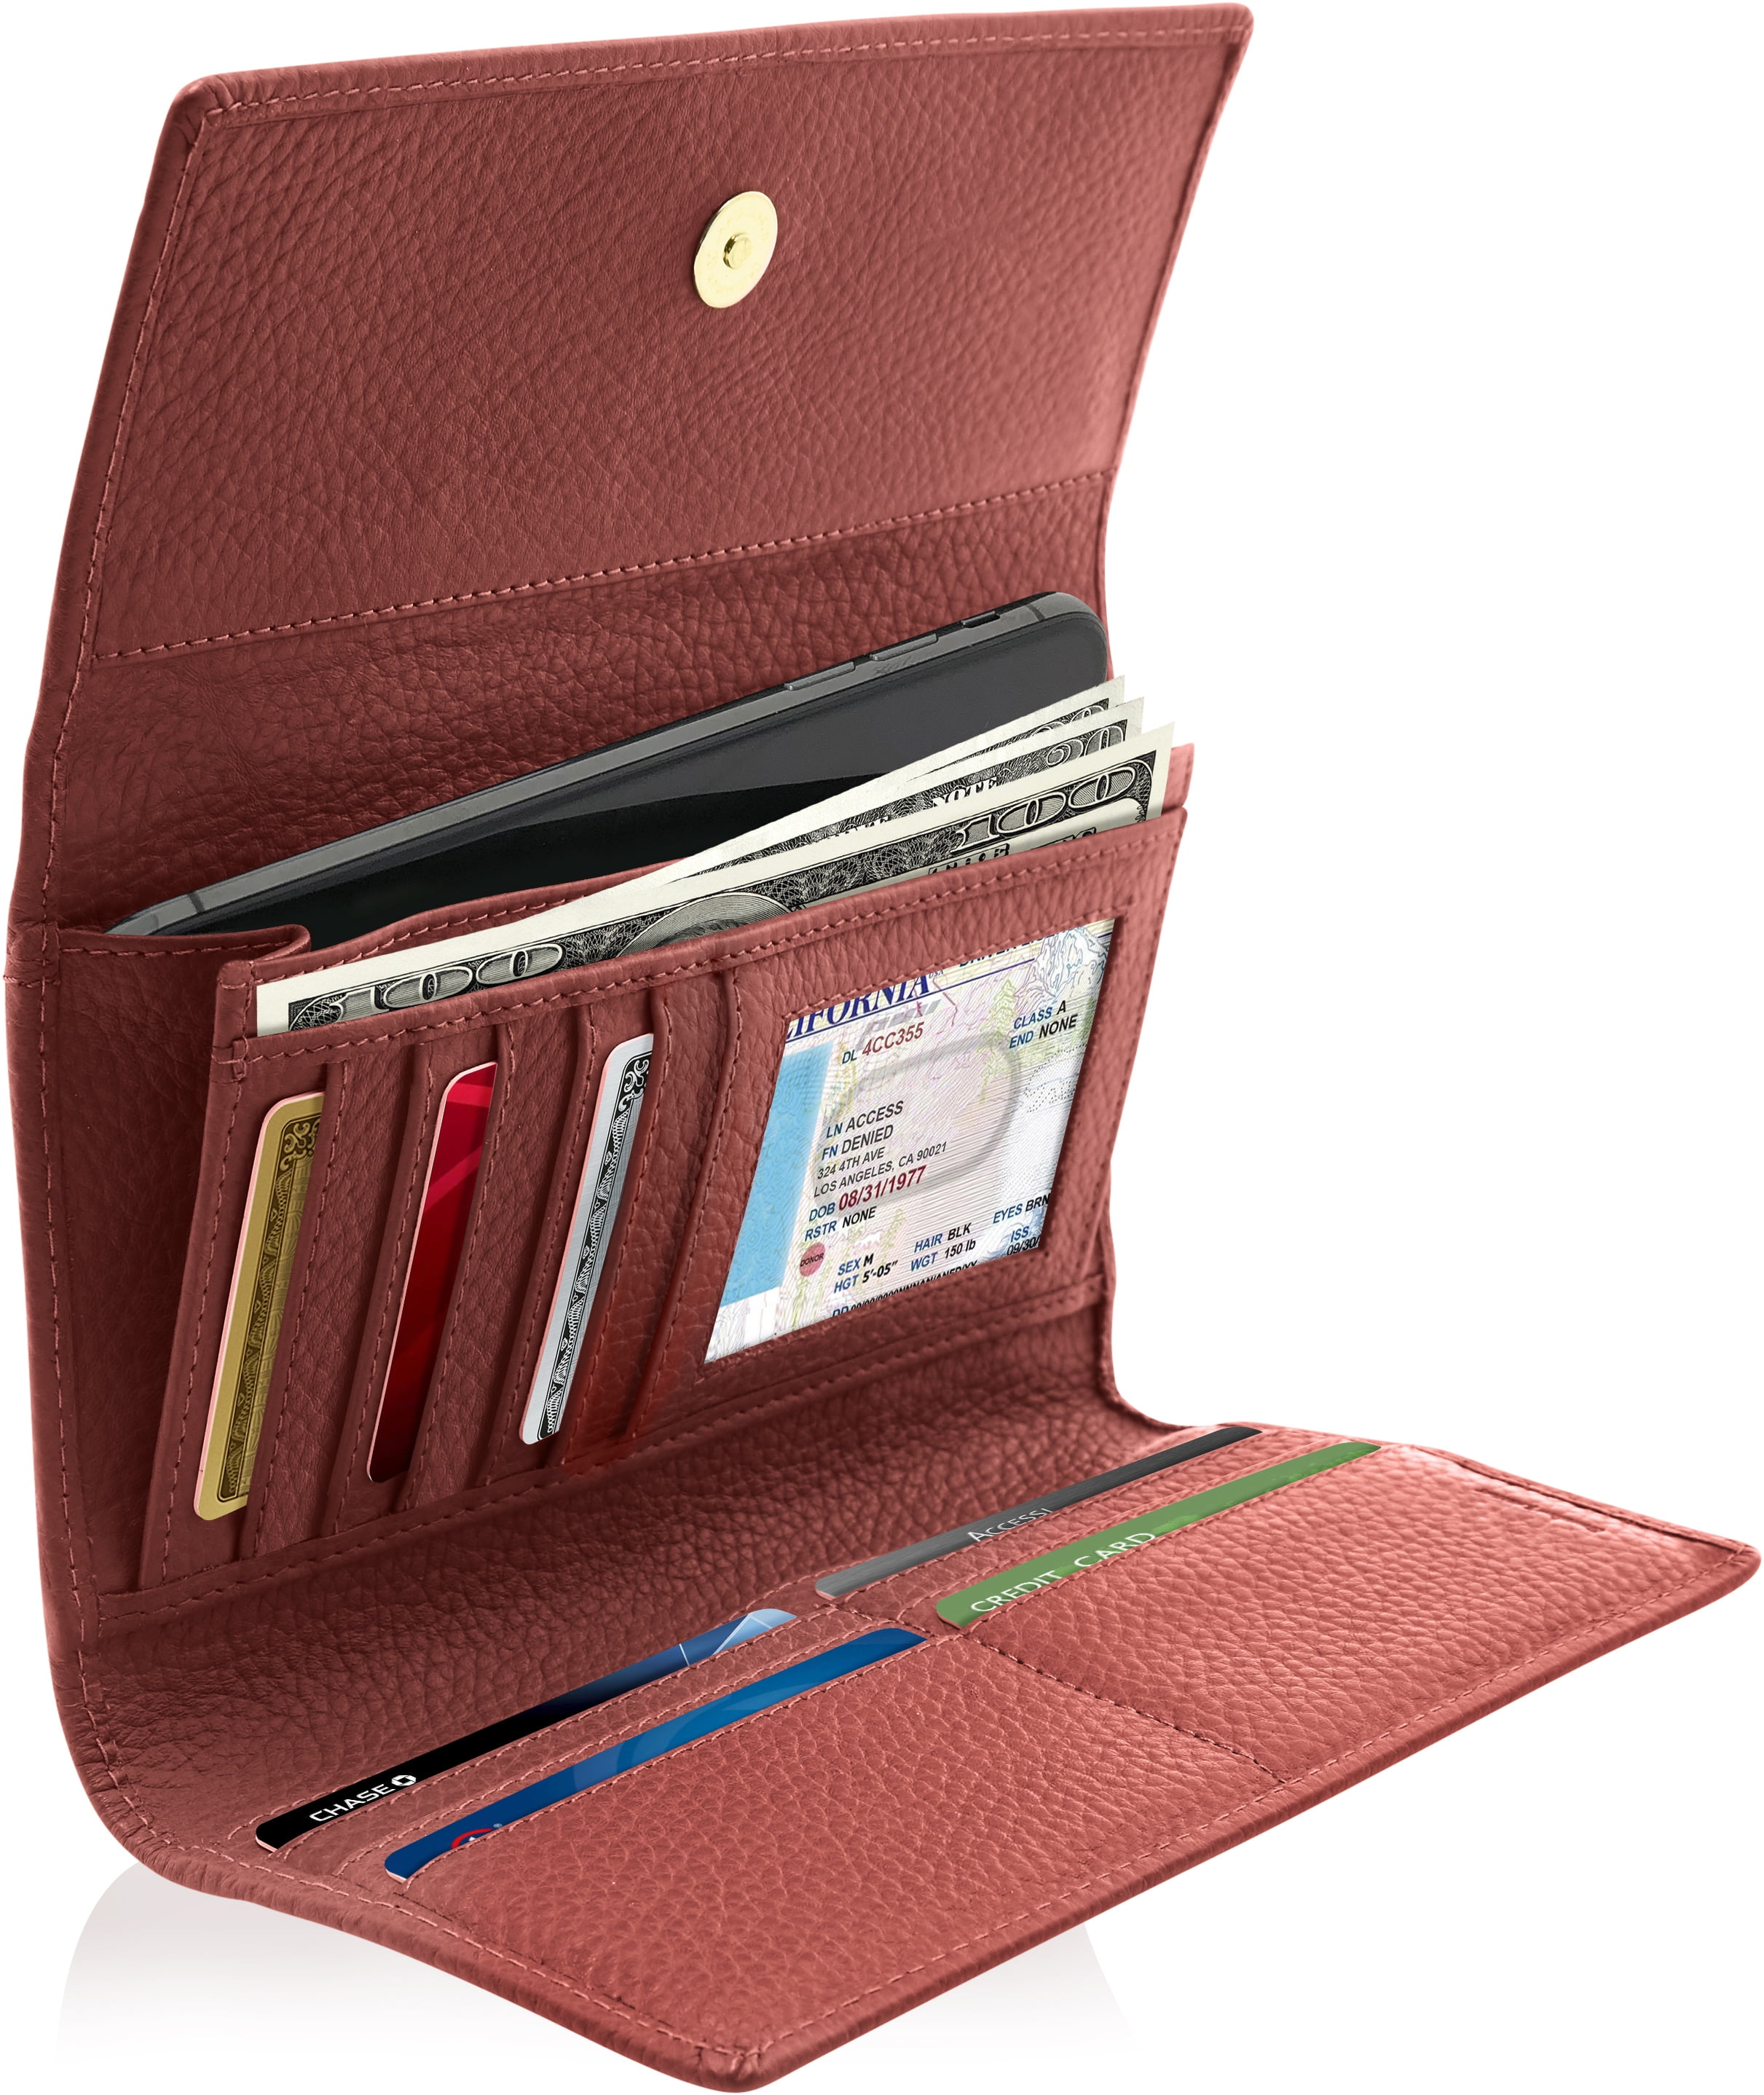 herren-accessoires-genuine-leather-checkbook-cover-clutch-zip-wallet-men-women-us-seller-no3755956